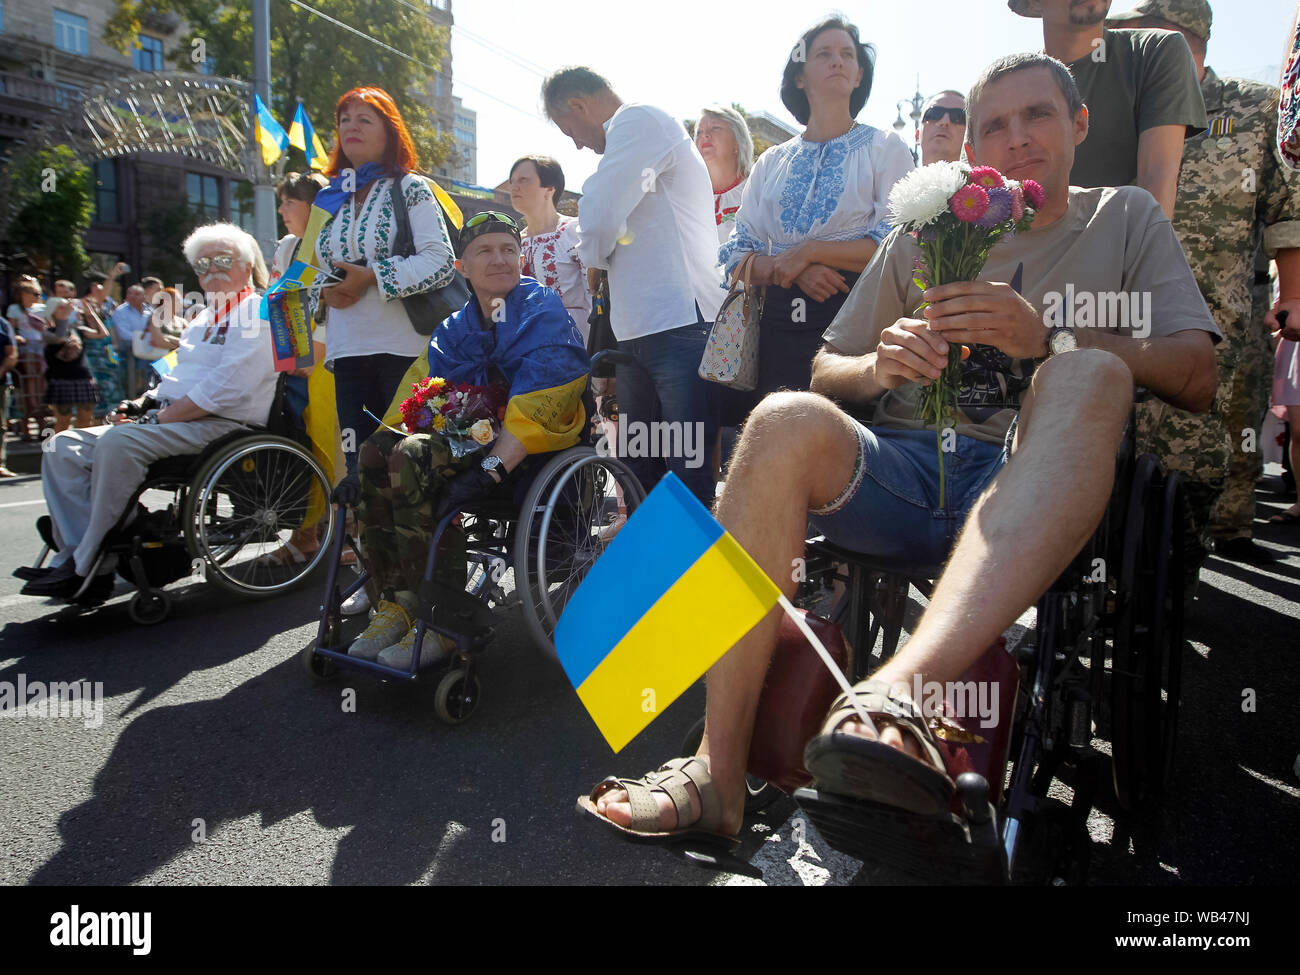 Militaires handicapés à l'Ukraine la place de l'indépendance au cours de l'Anniversaire.L'Ukraine marque le 28e anniversaire du Jour de l'indépendance de l'Union soviétique depuis 1991, le 24 août 2019. Banque D'Images